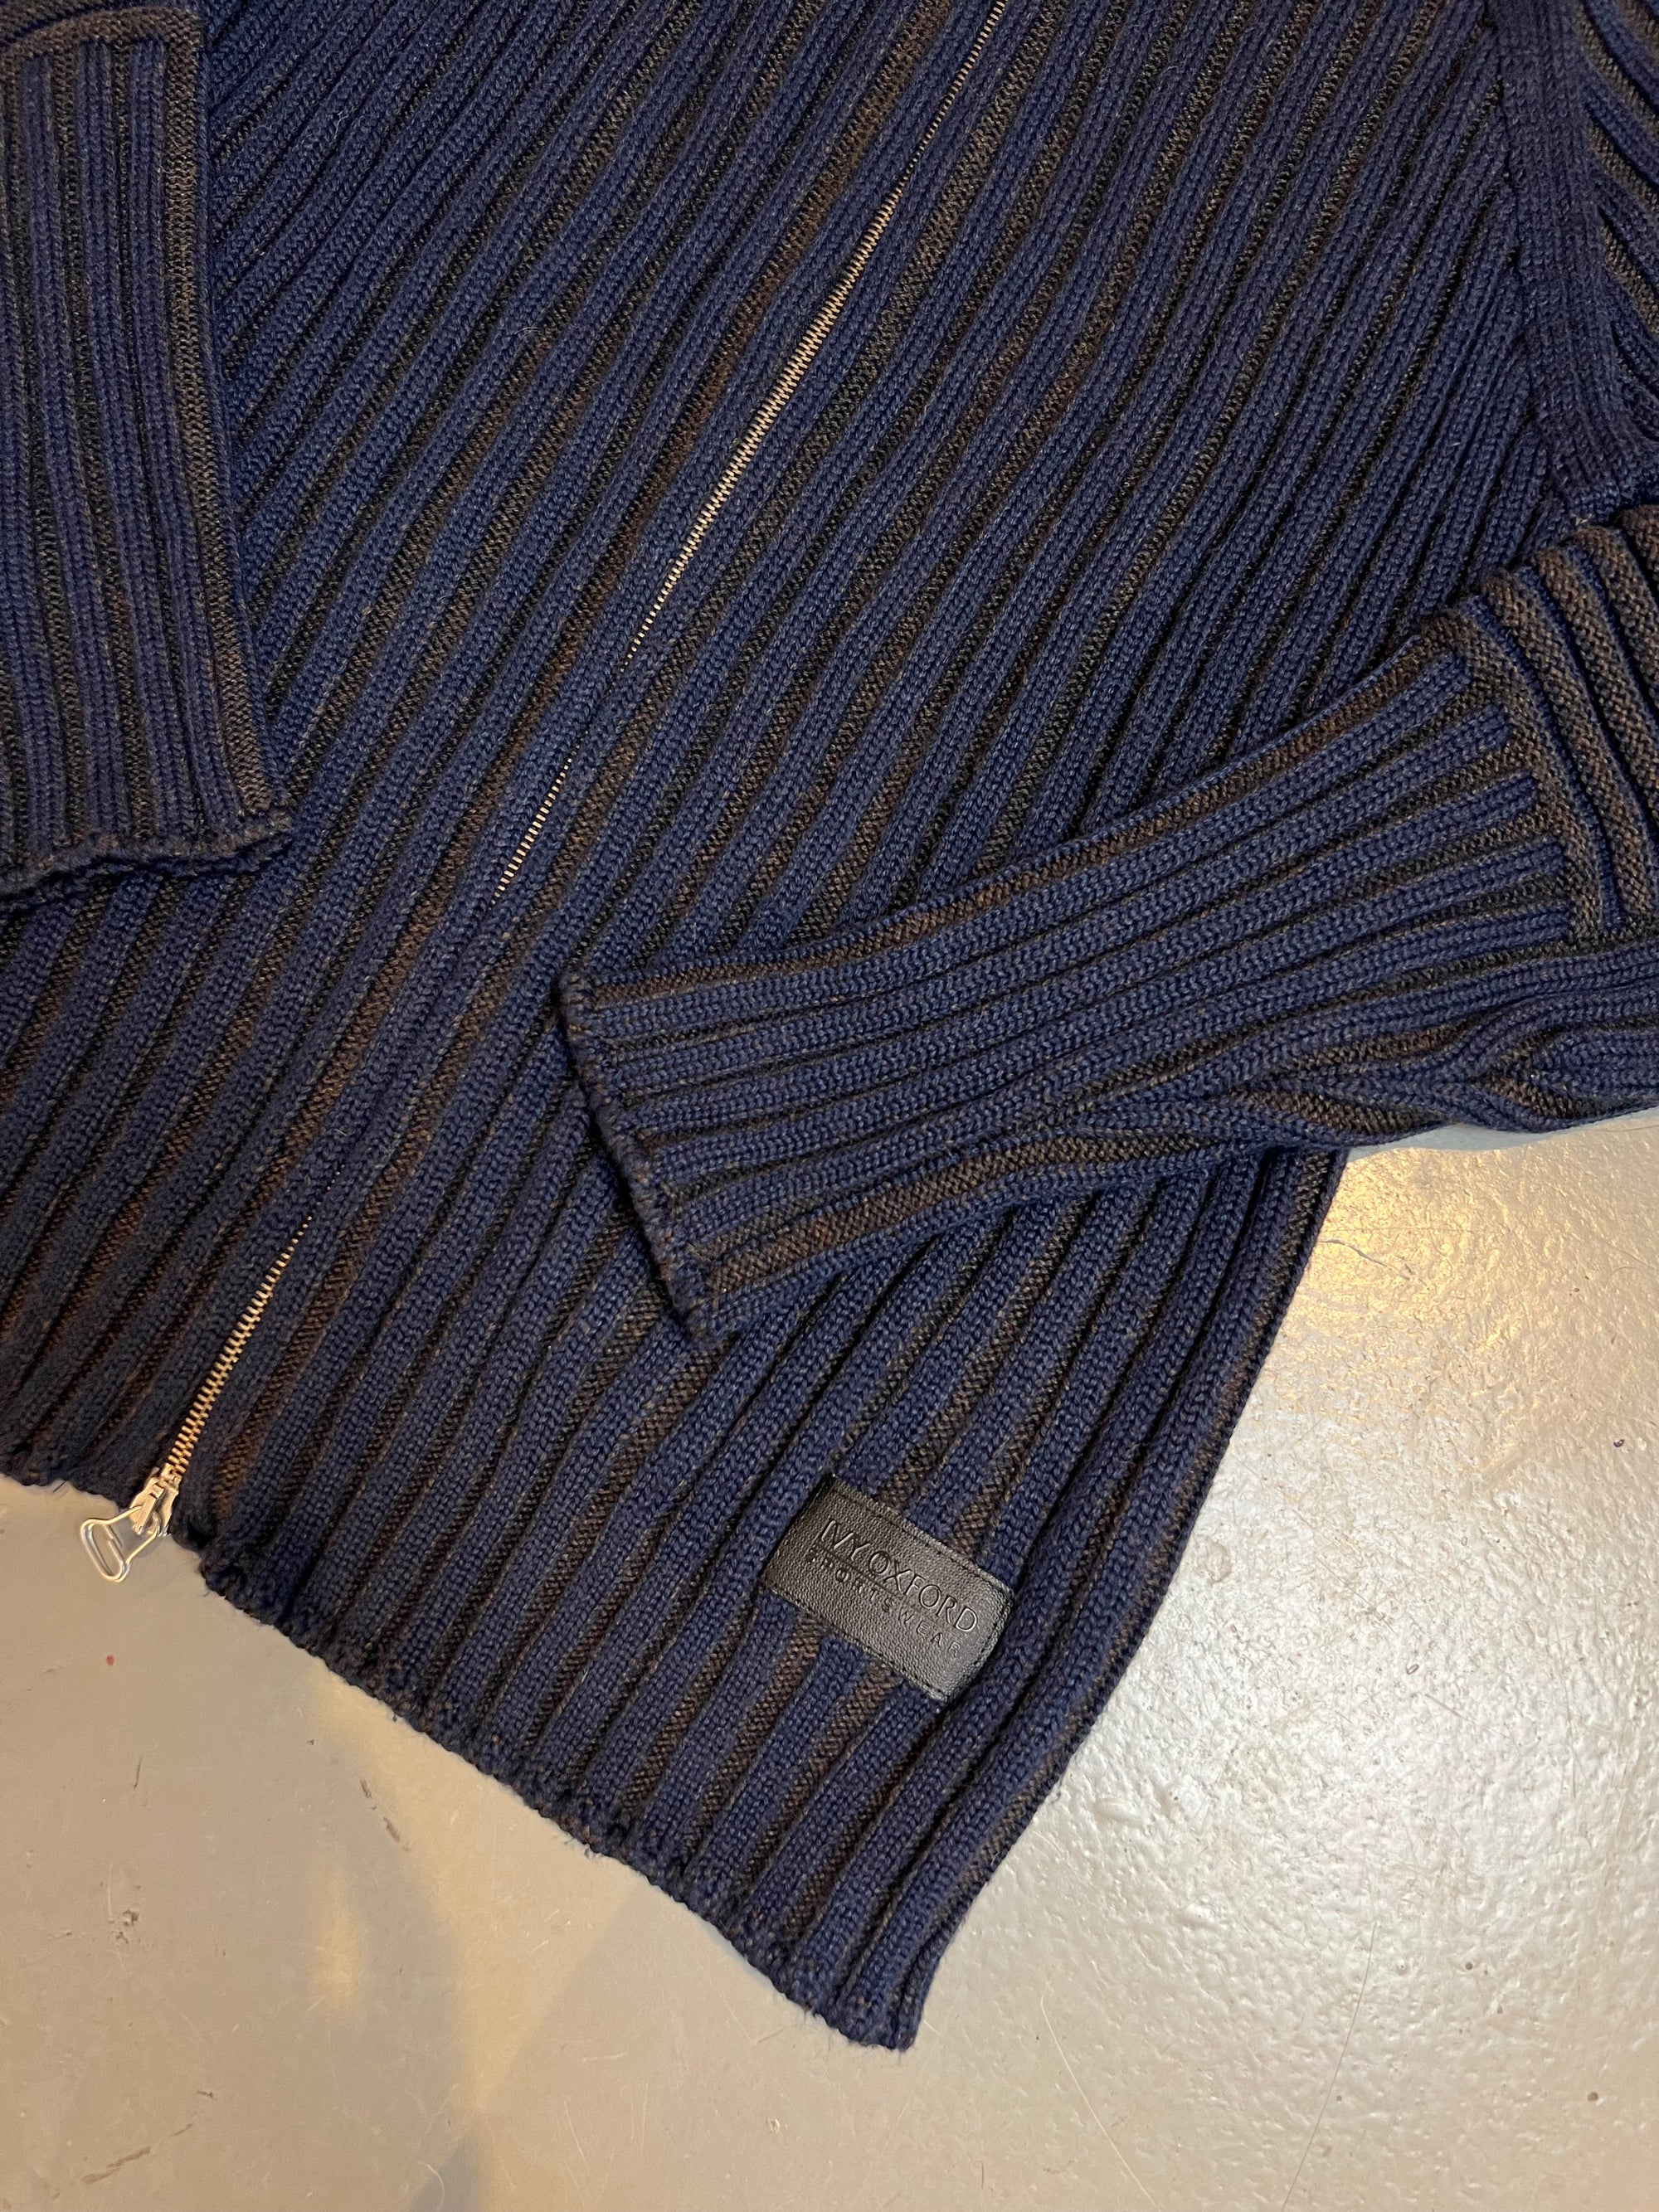 Produkt Bild Vintage Ivy Oxford Knit Zipper L/XL vom Bund